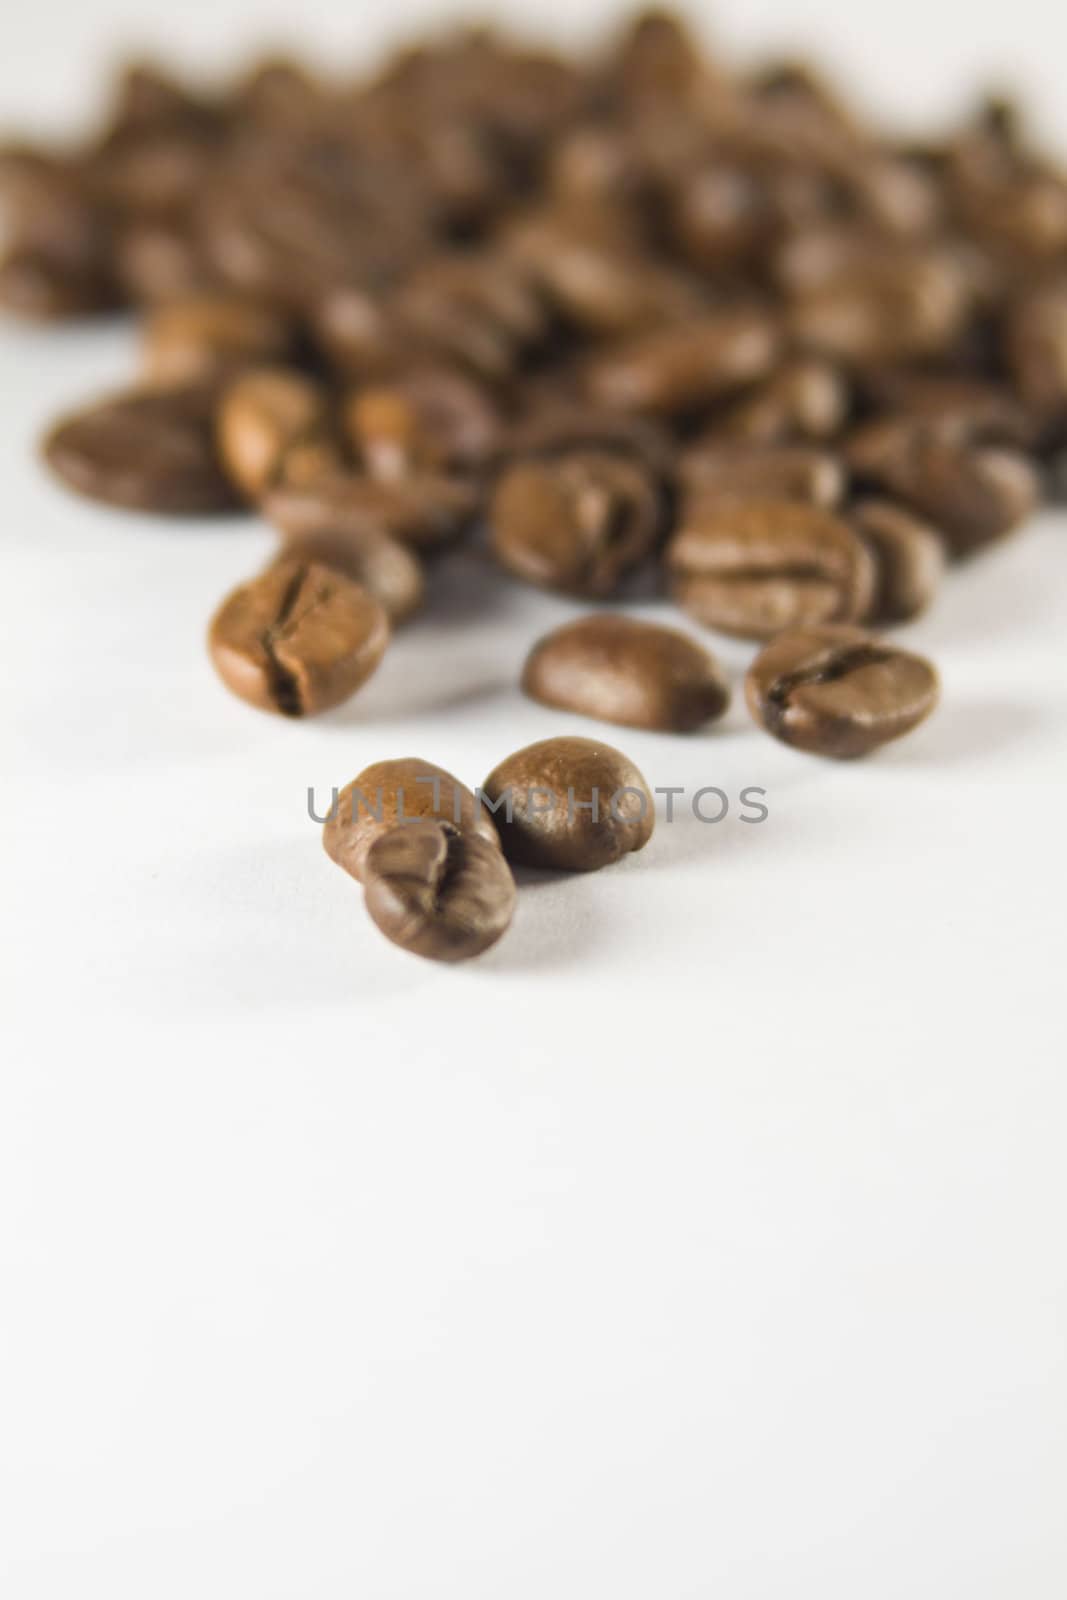 Coffee Beans by smoki